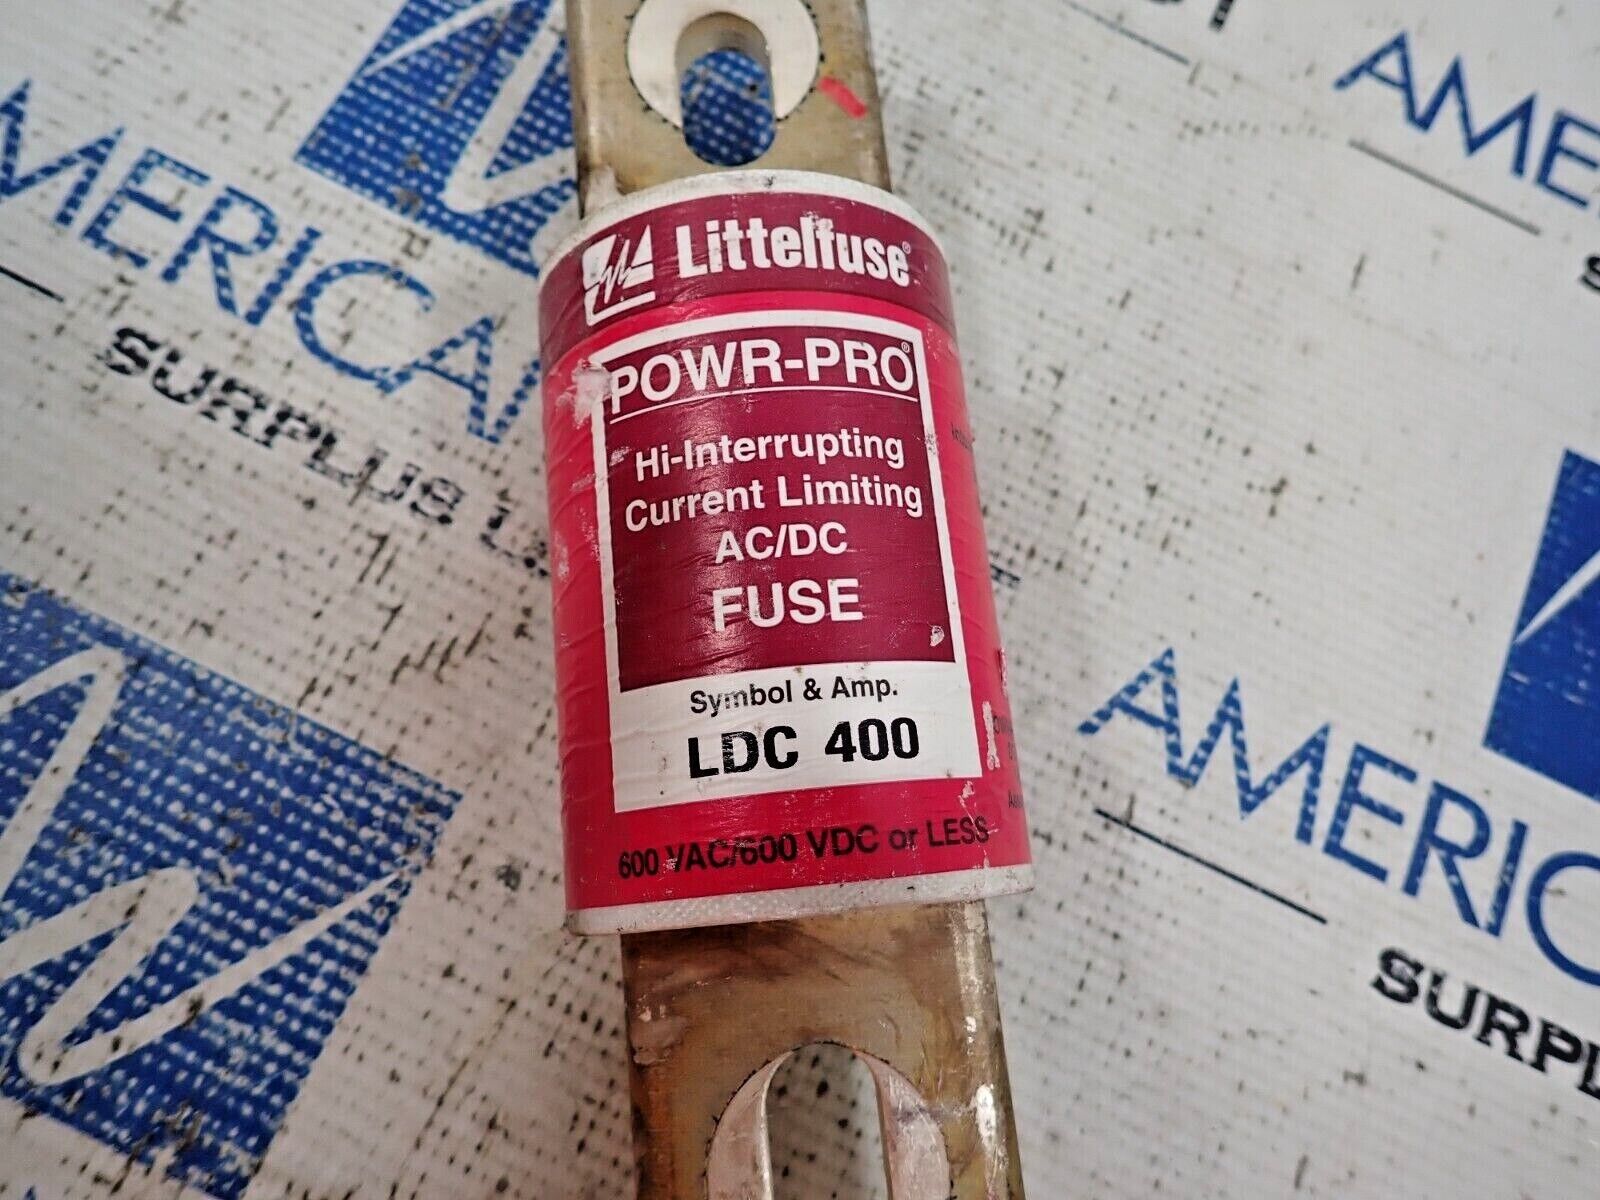 Littlefuse LDC400 Power-Pro Hi-Interrupting AC/DC Fuse 400 Amp 600V